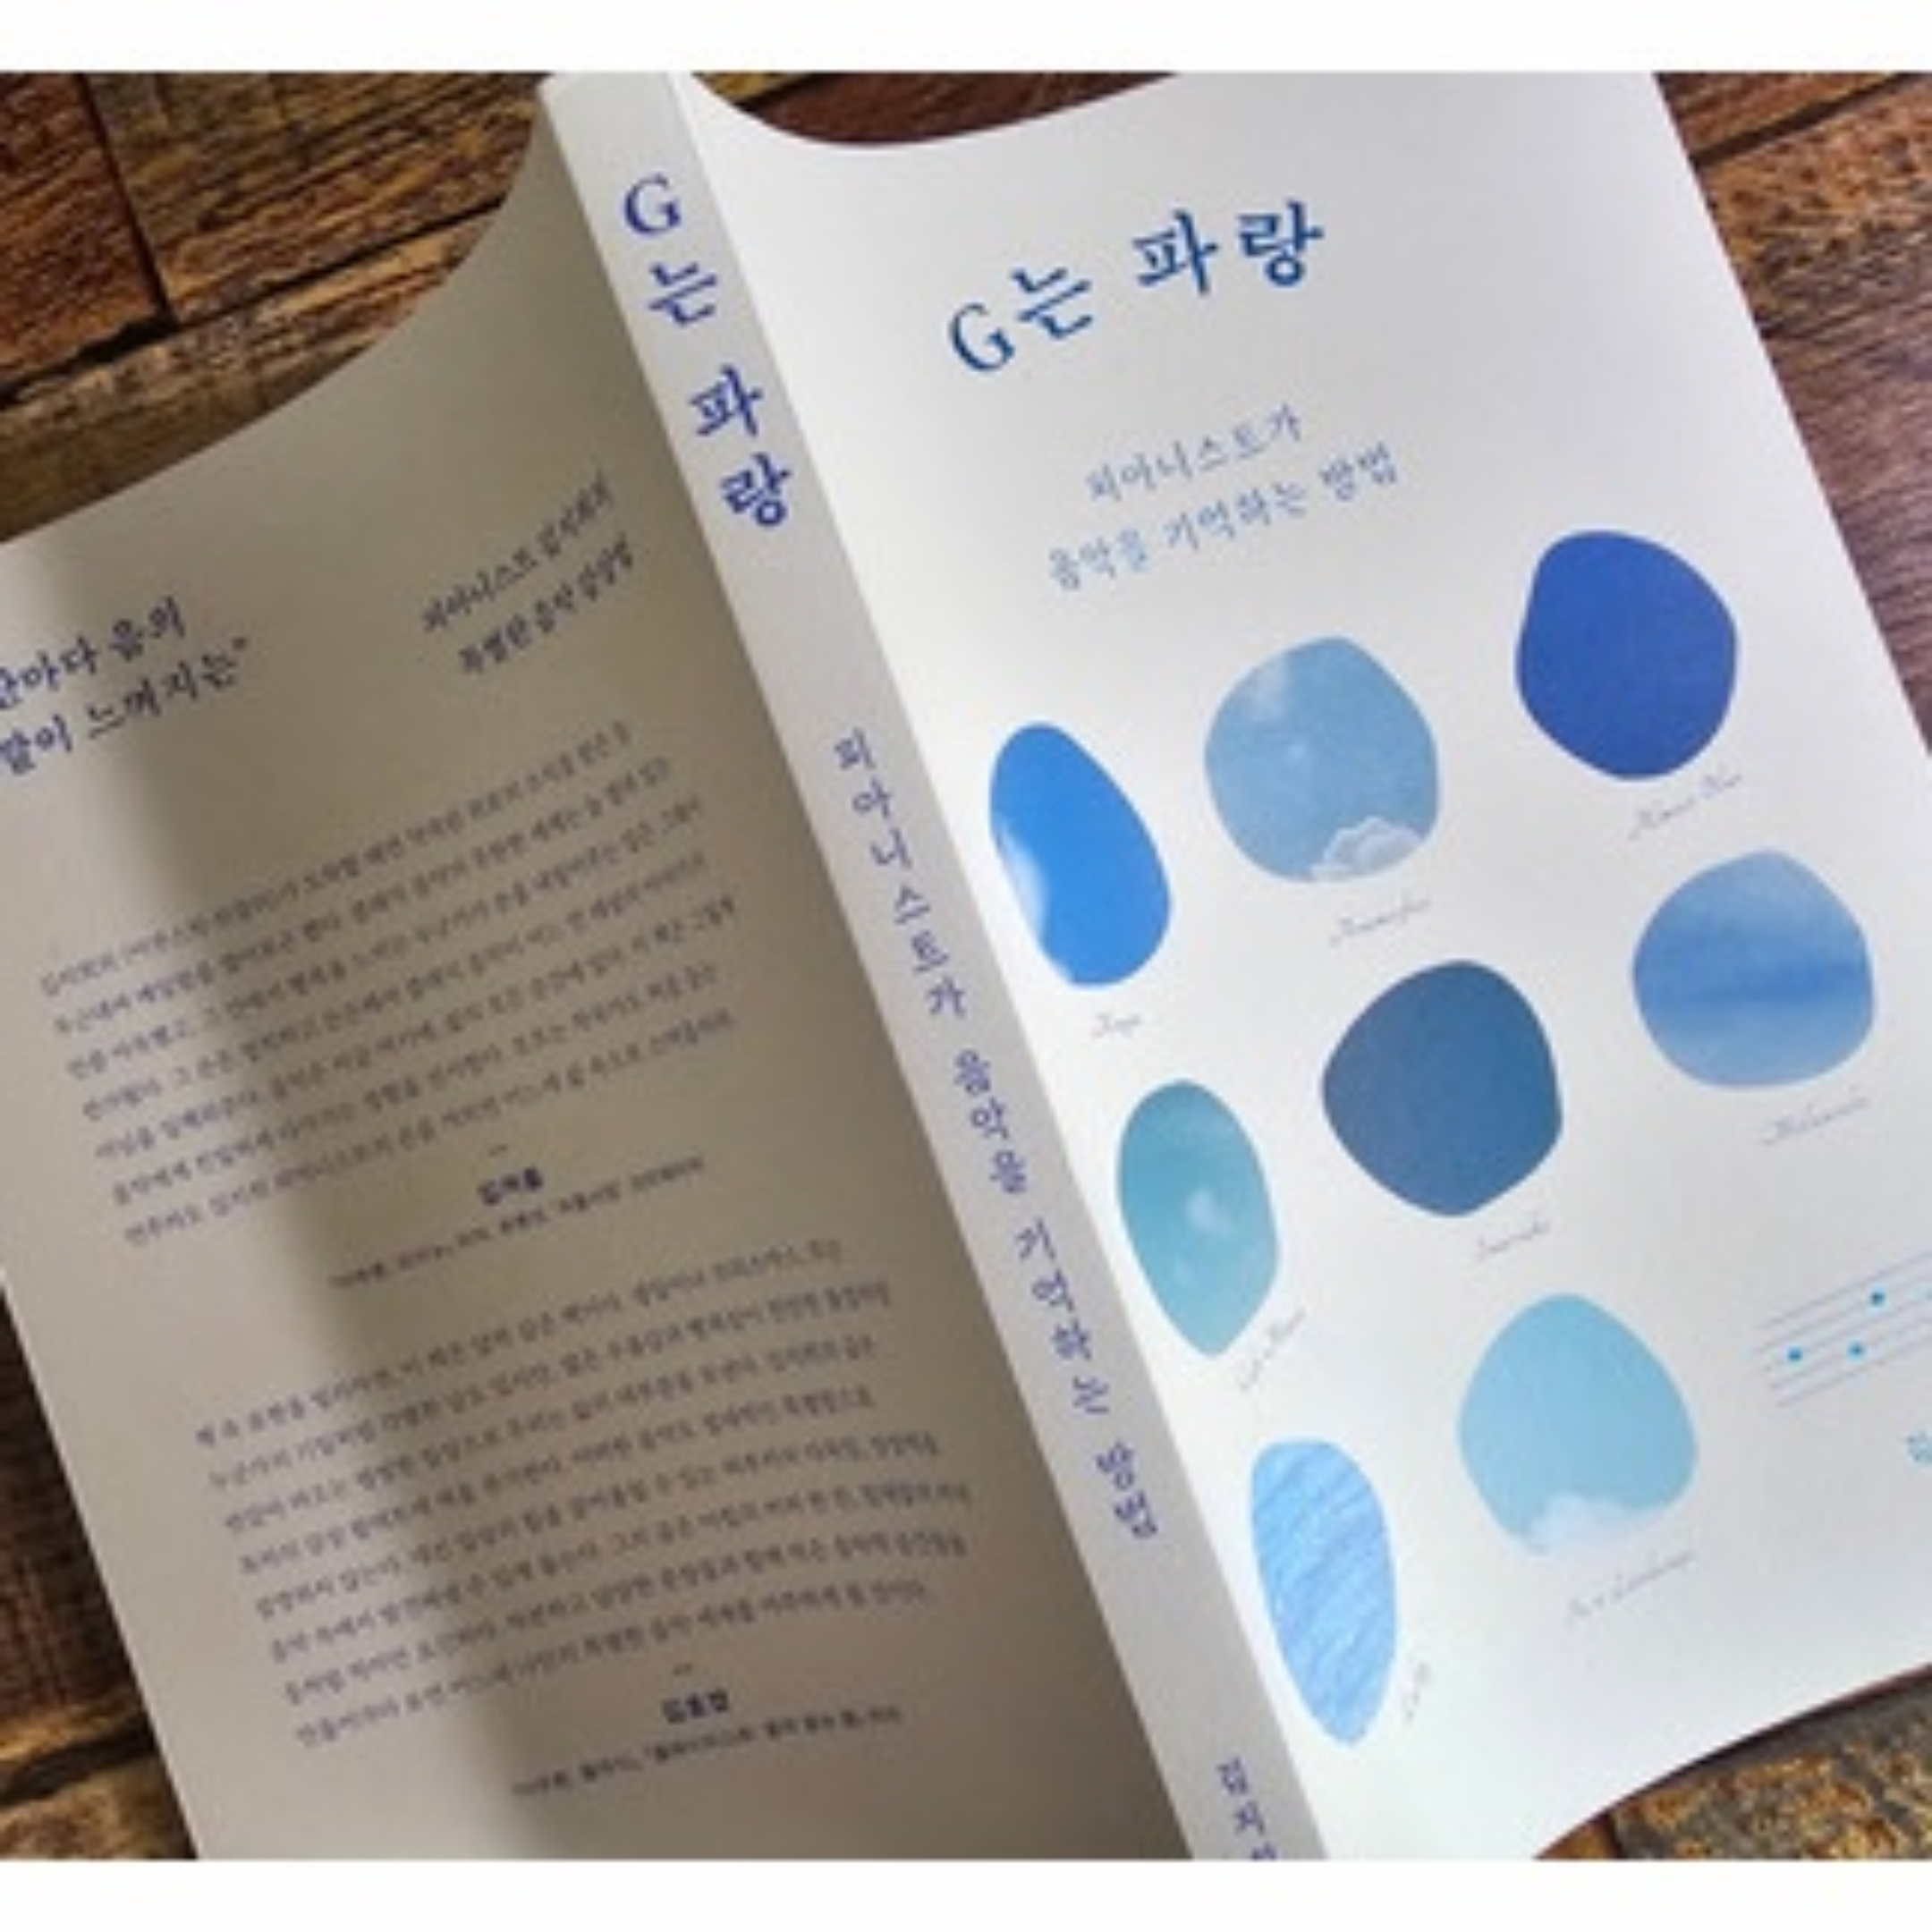 김수연님의 G는 파랑 게시물 이미지